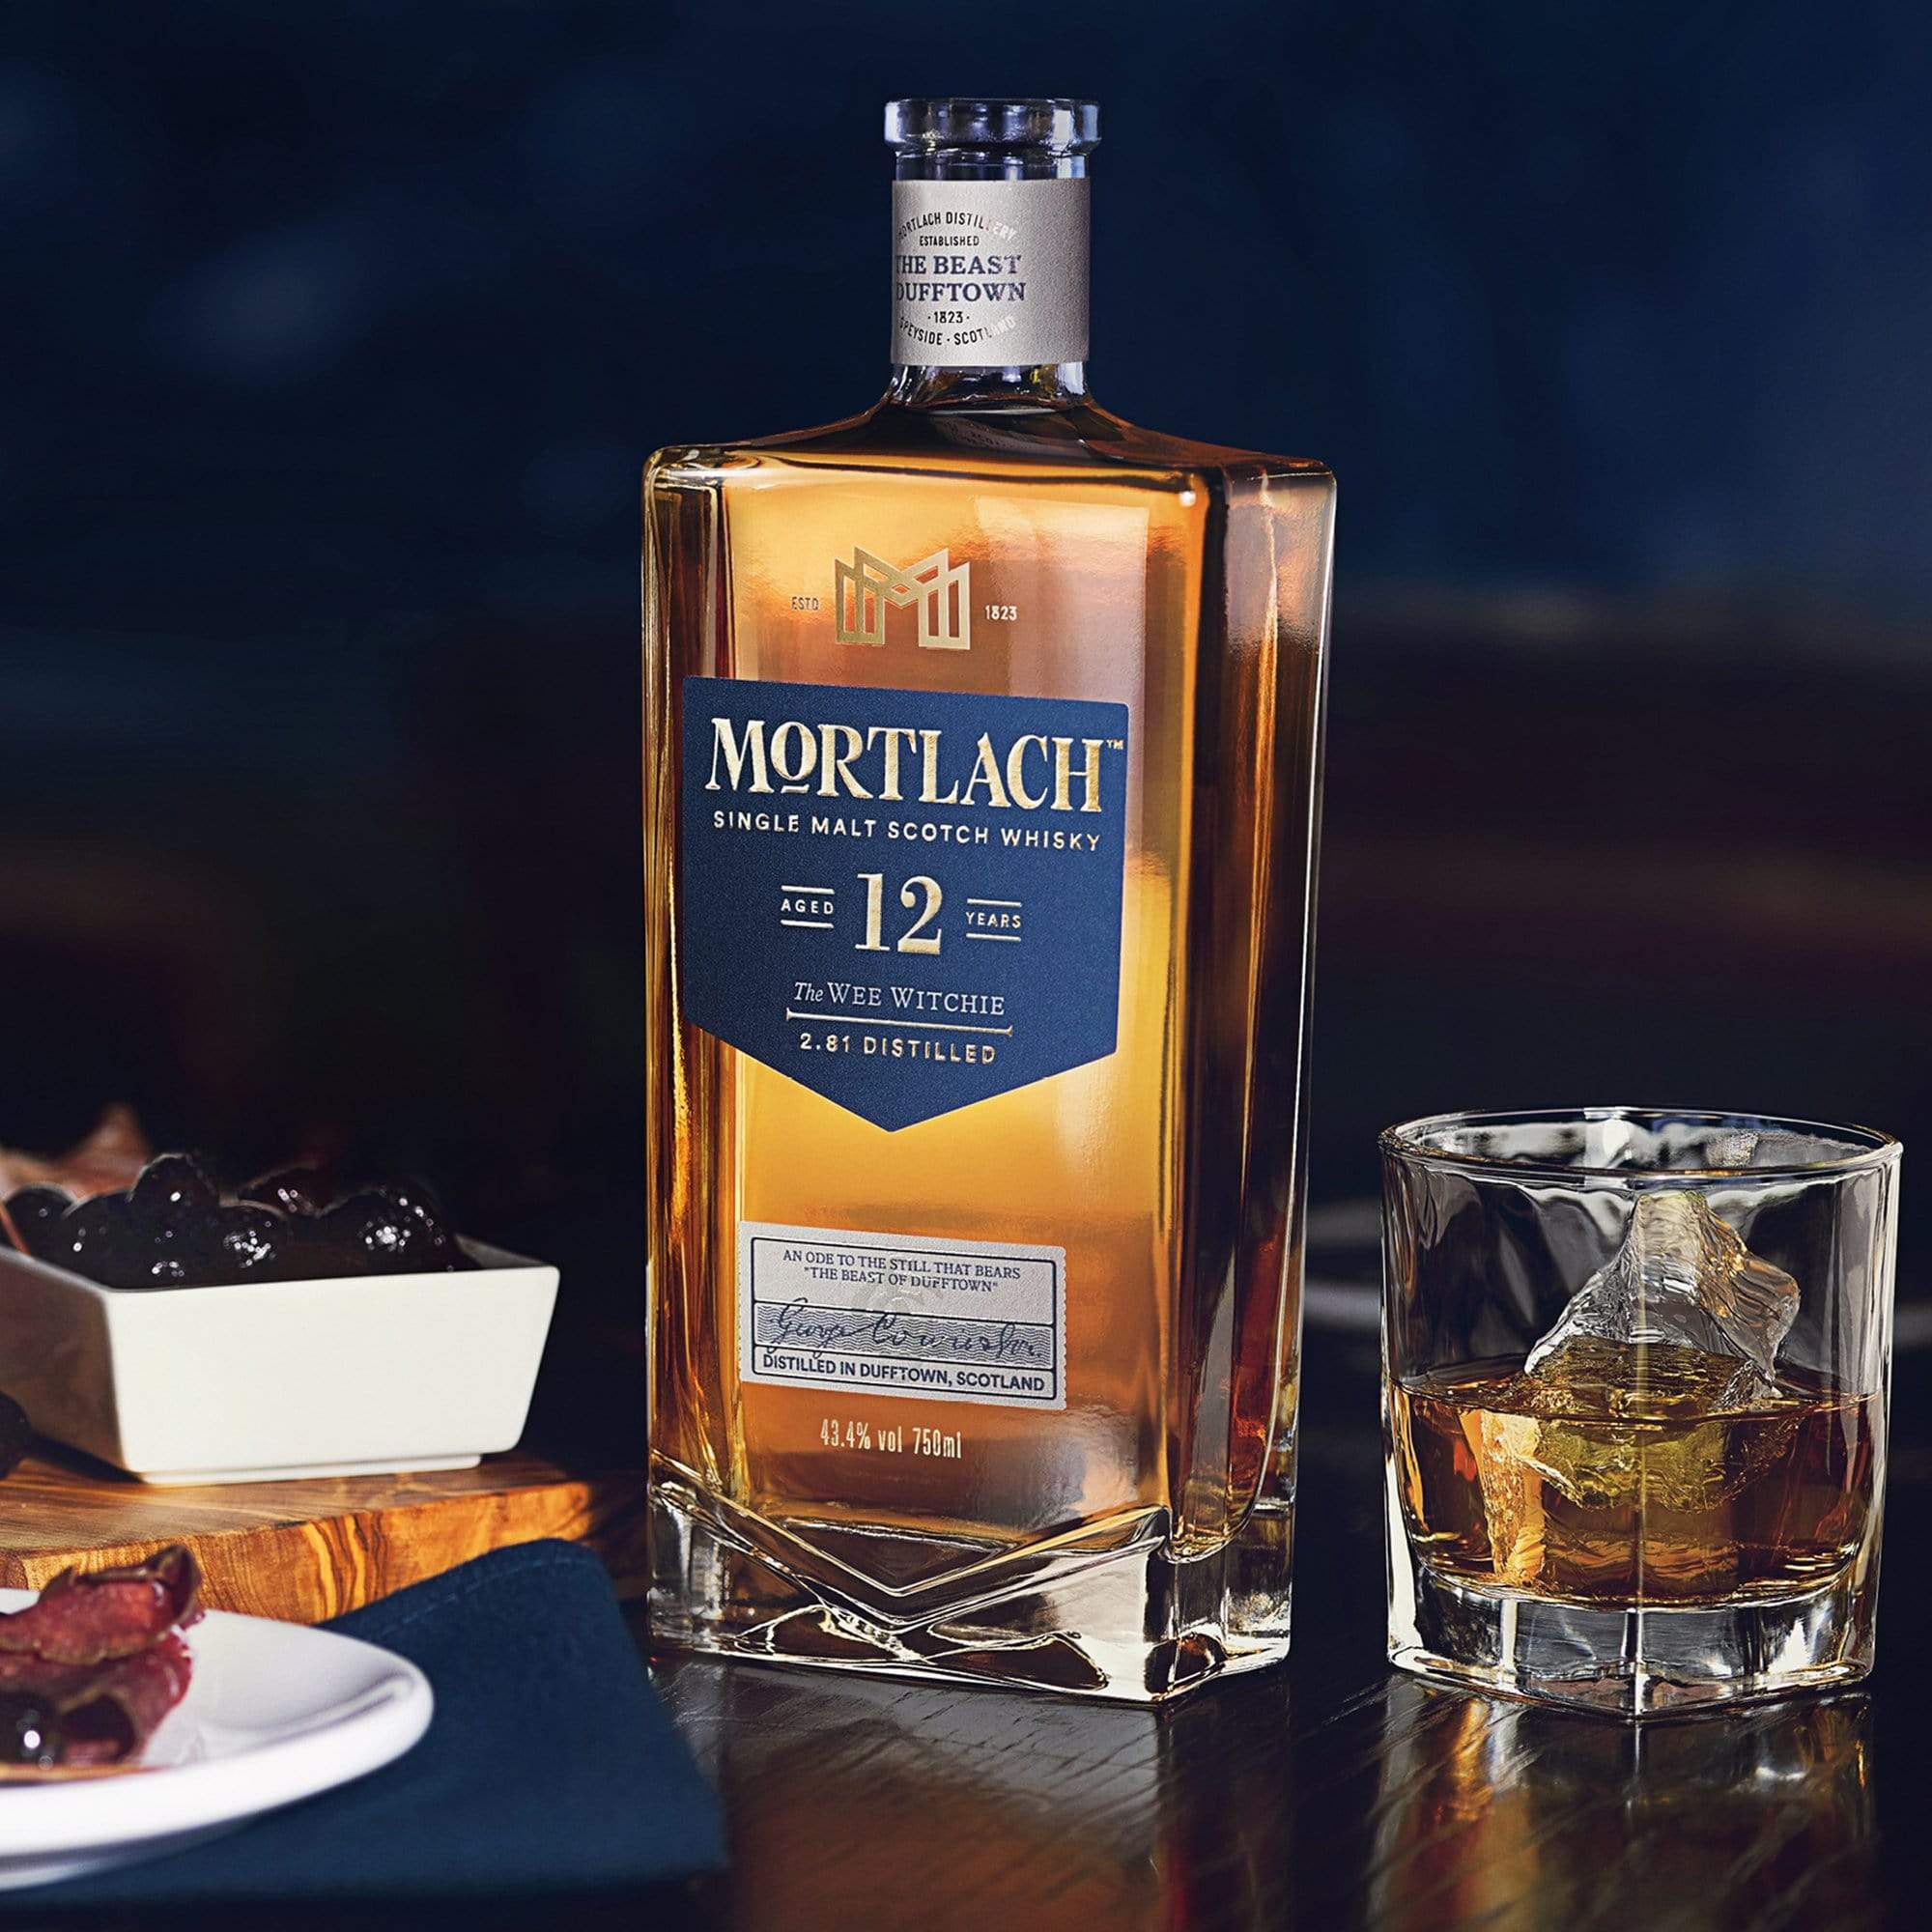 Mortlach Mortlach Whisky 70cl MORTLACH 12 Y.O